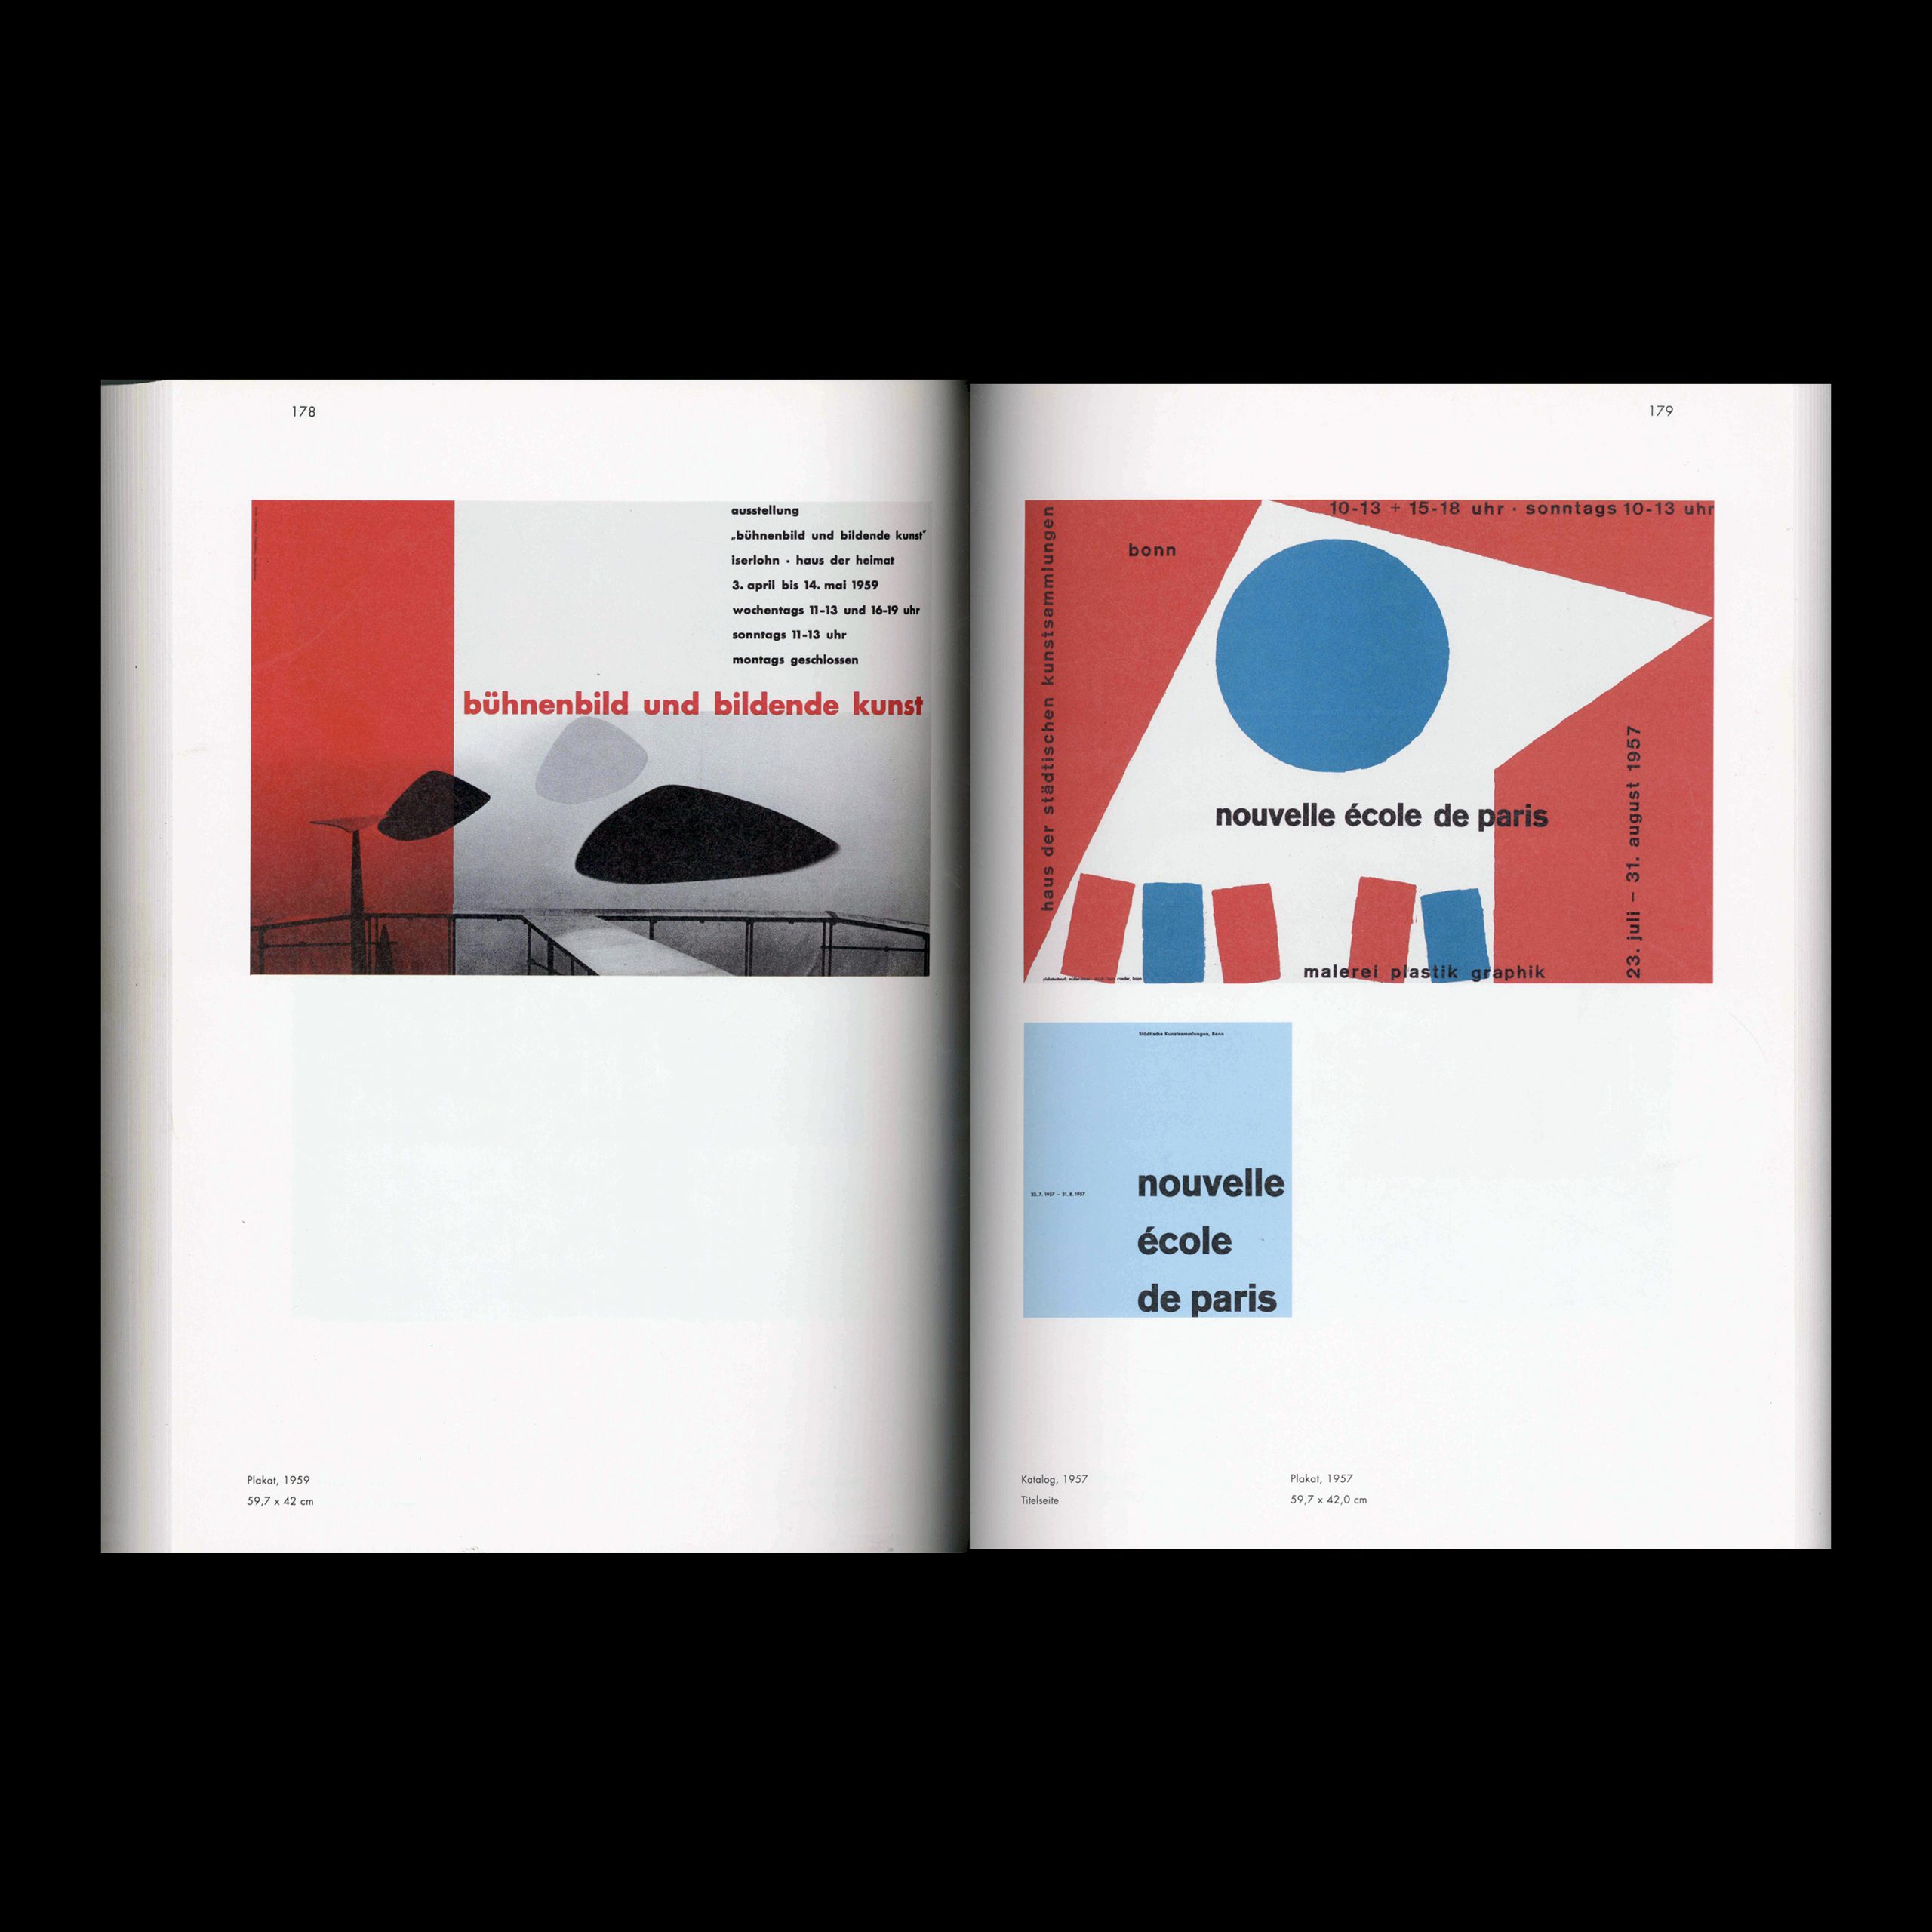 Karl Oskar Blase - Grafik Design von 49 bis 95, 1995 